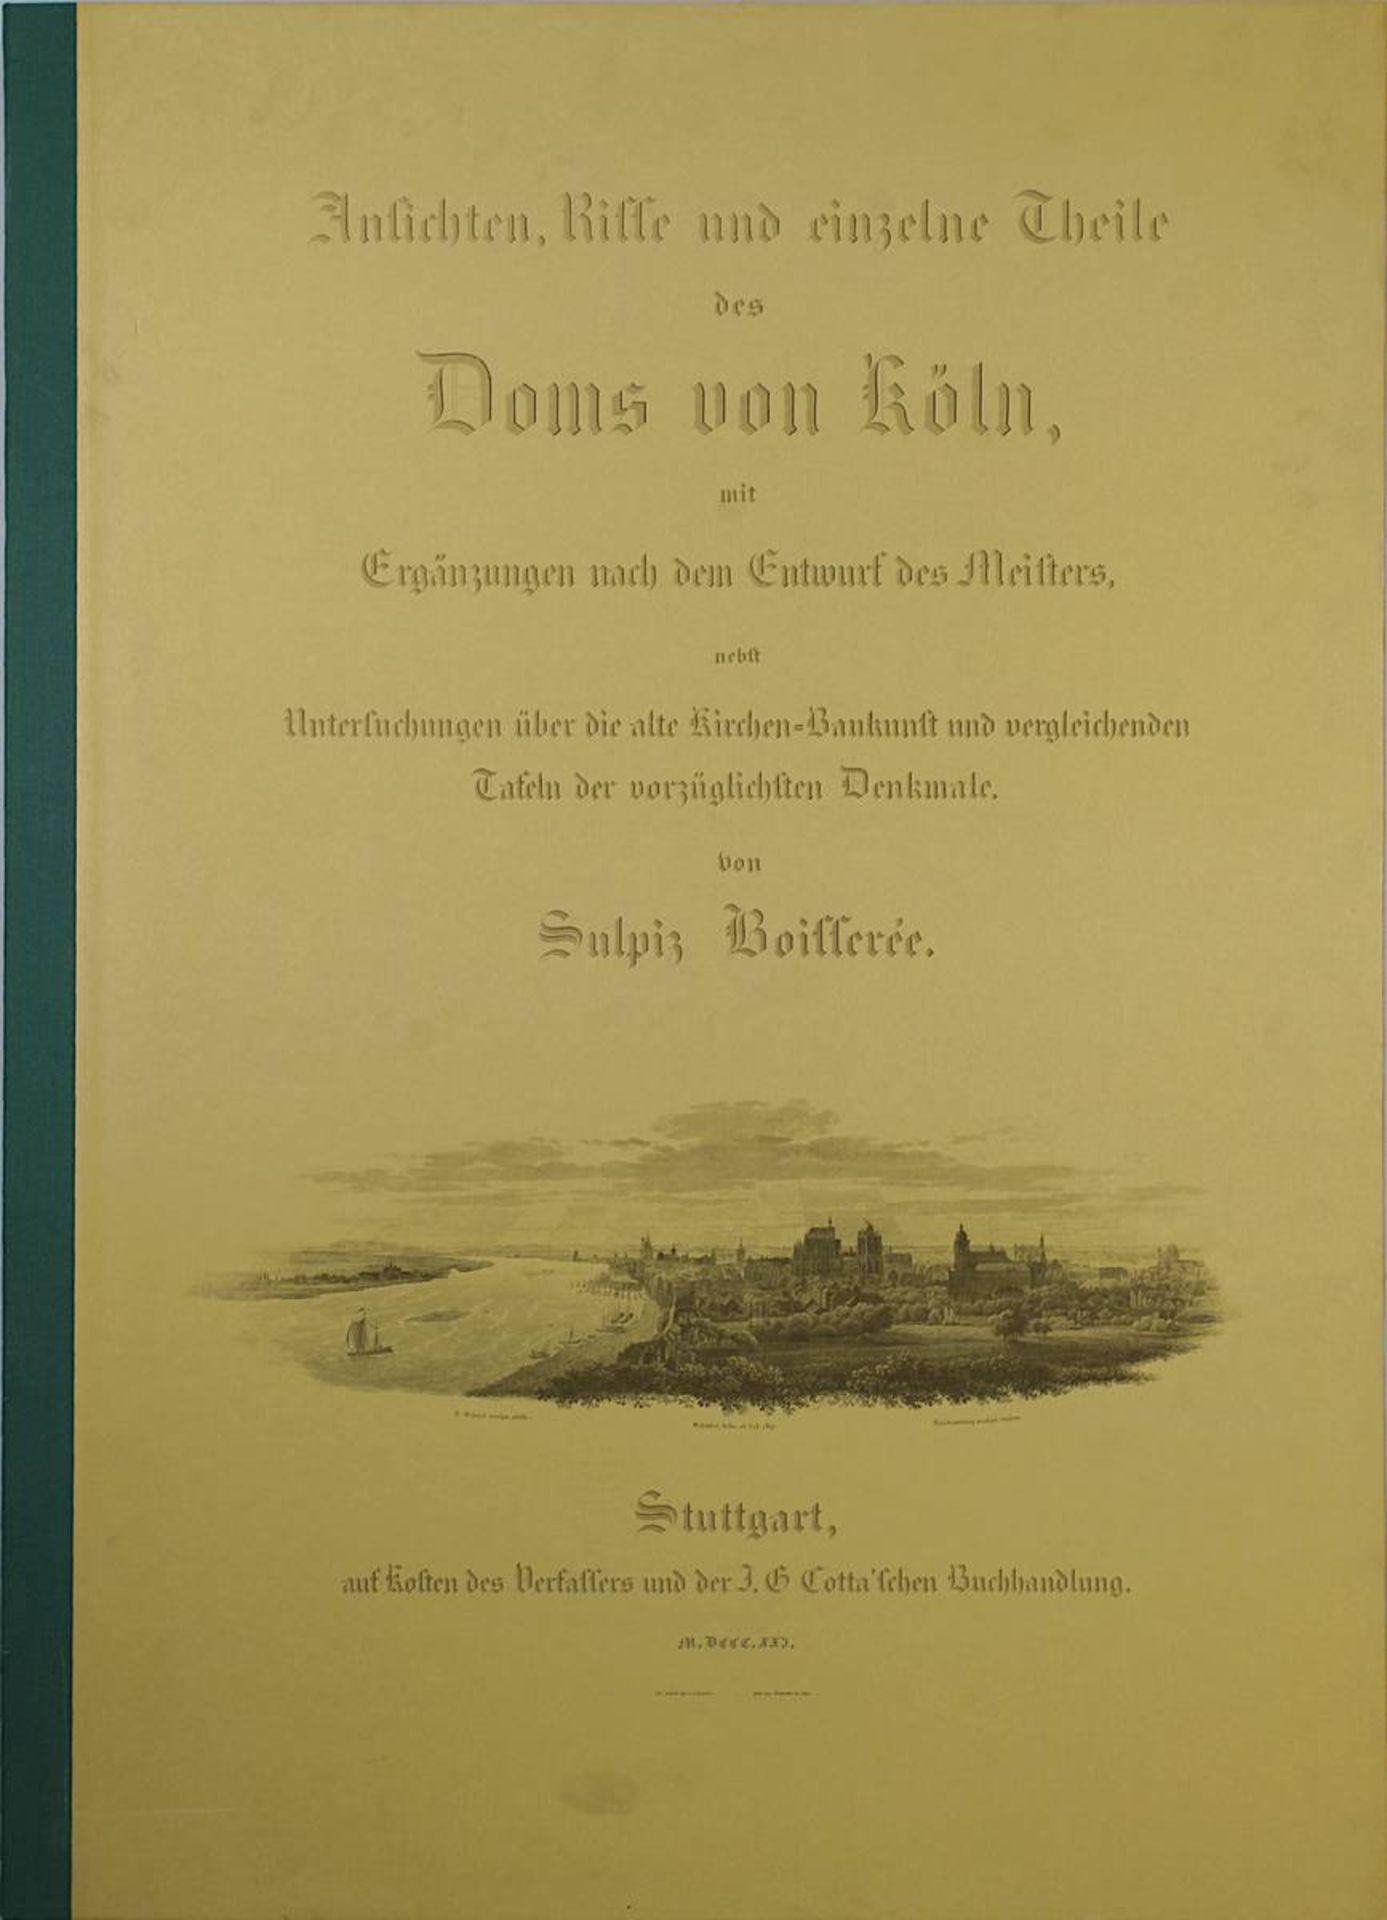 Boisserée Sulpiz "Ansichten, Risse und einzelne Teile des Domes von Köln", hrsgn. Arnold Wolff, Köln